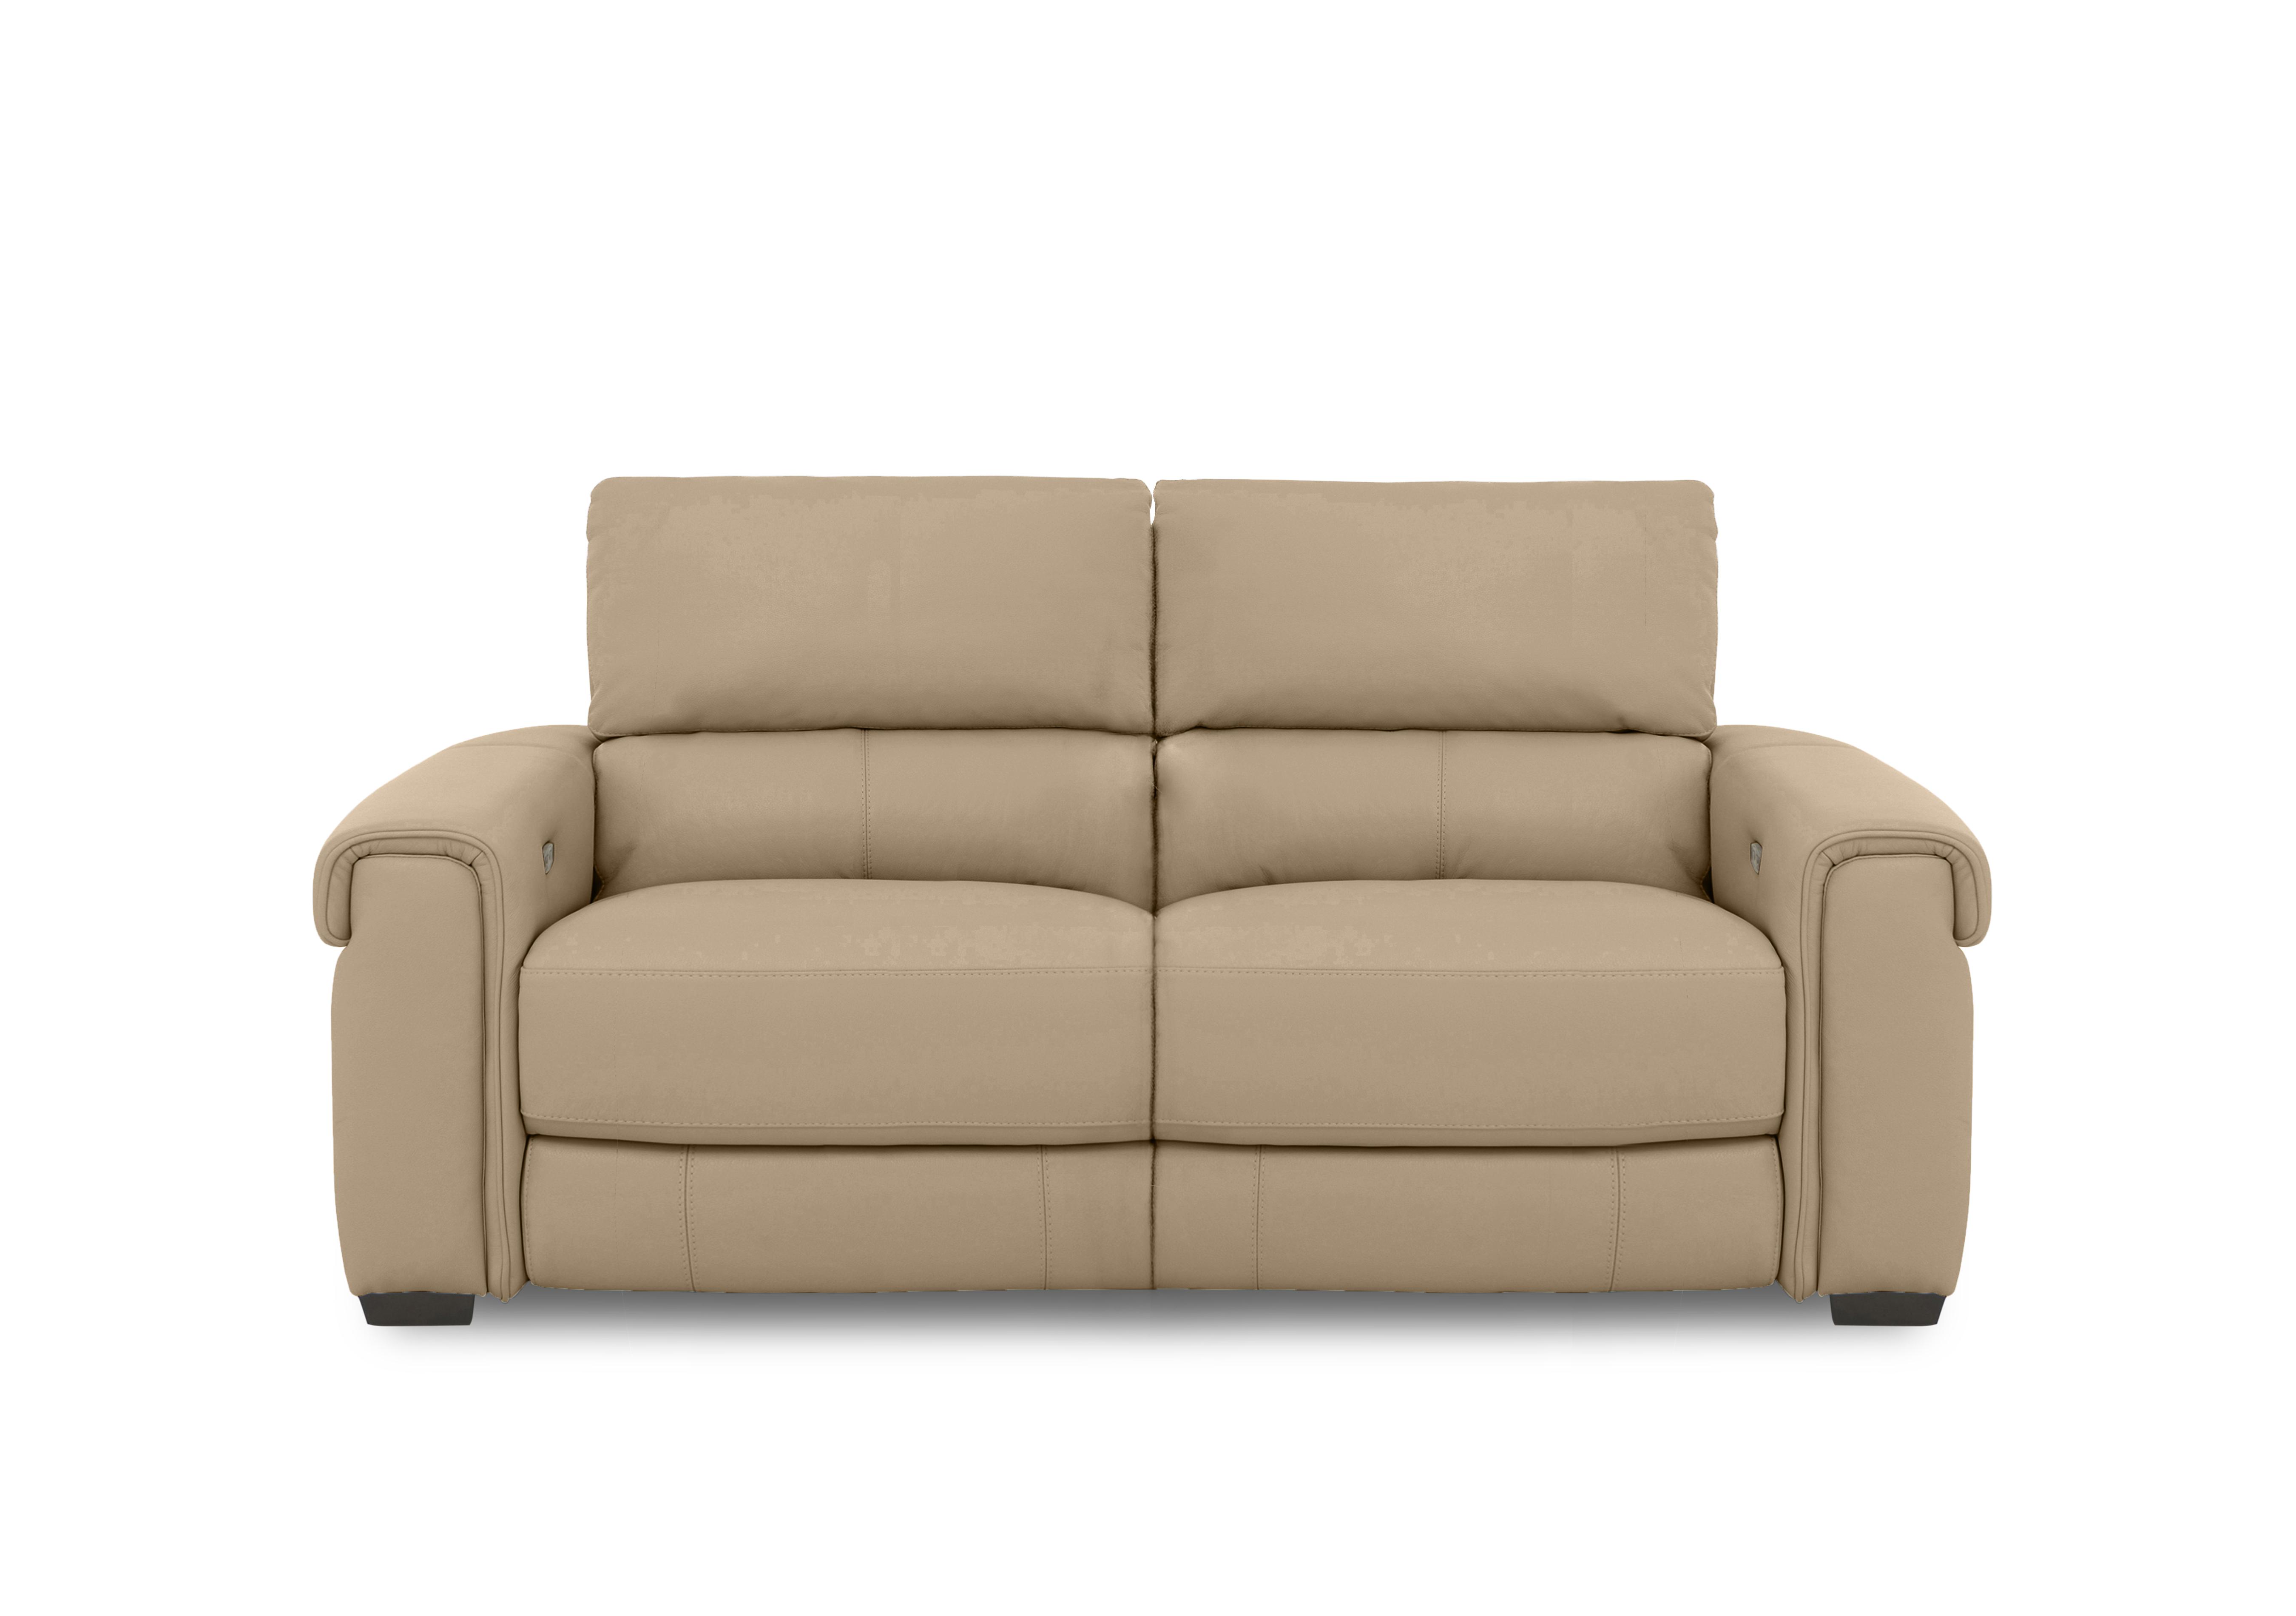 Nixon Leather 3 Seater Sofa in Nw-8475 Nude on Furniture Village